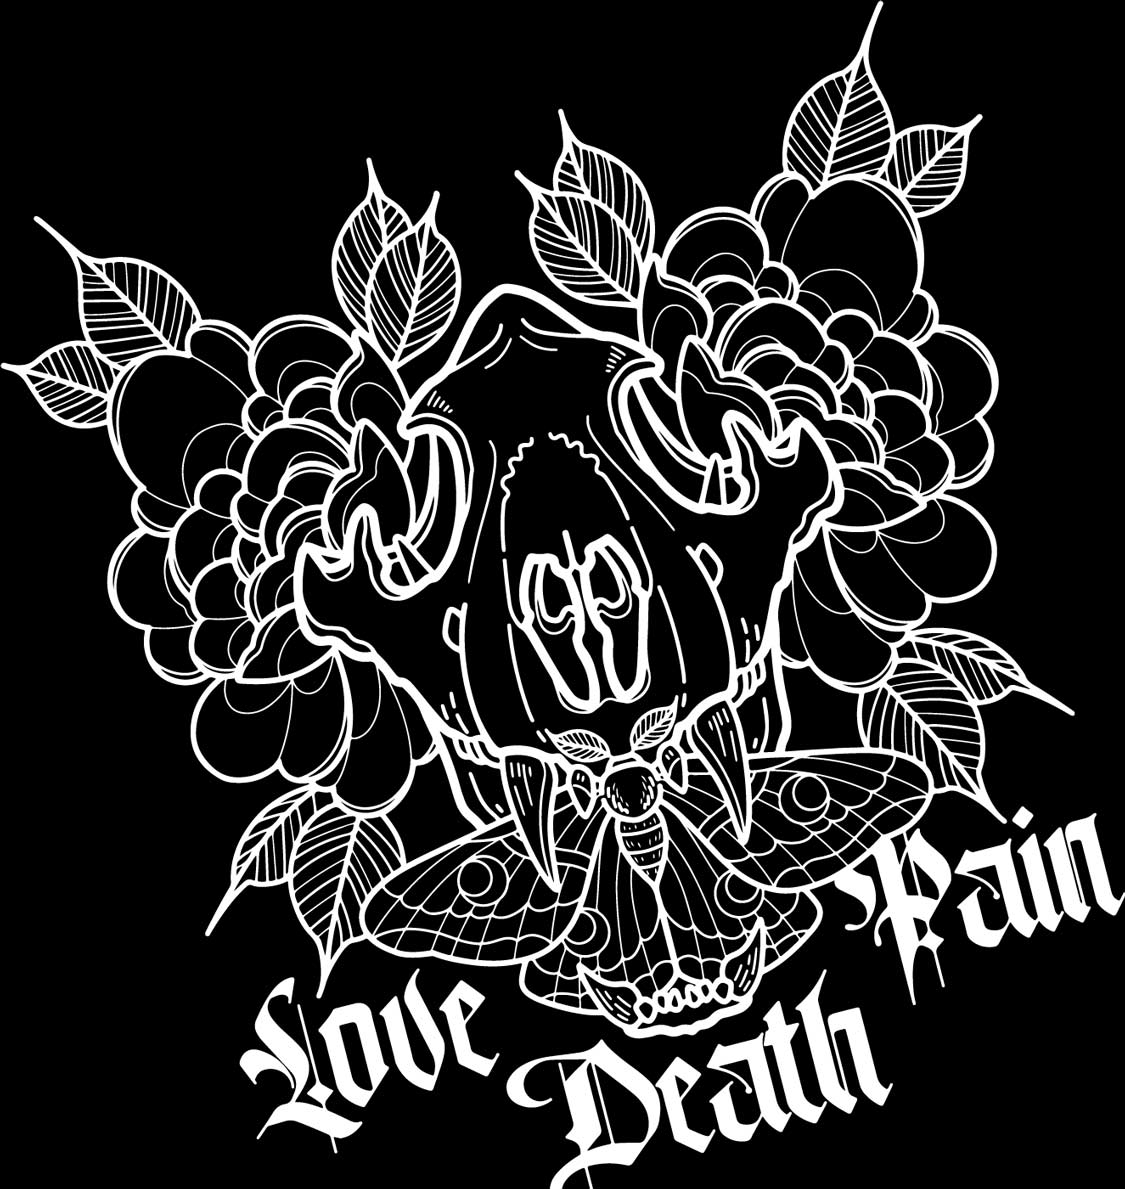 Love death pain logo